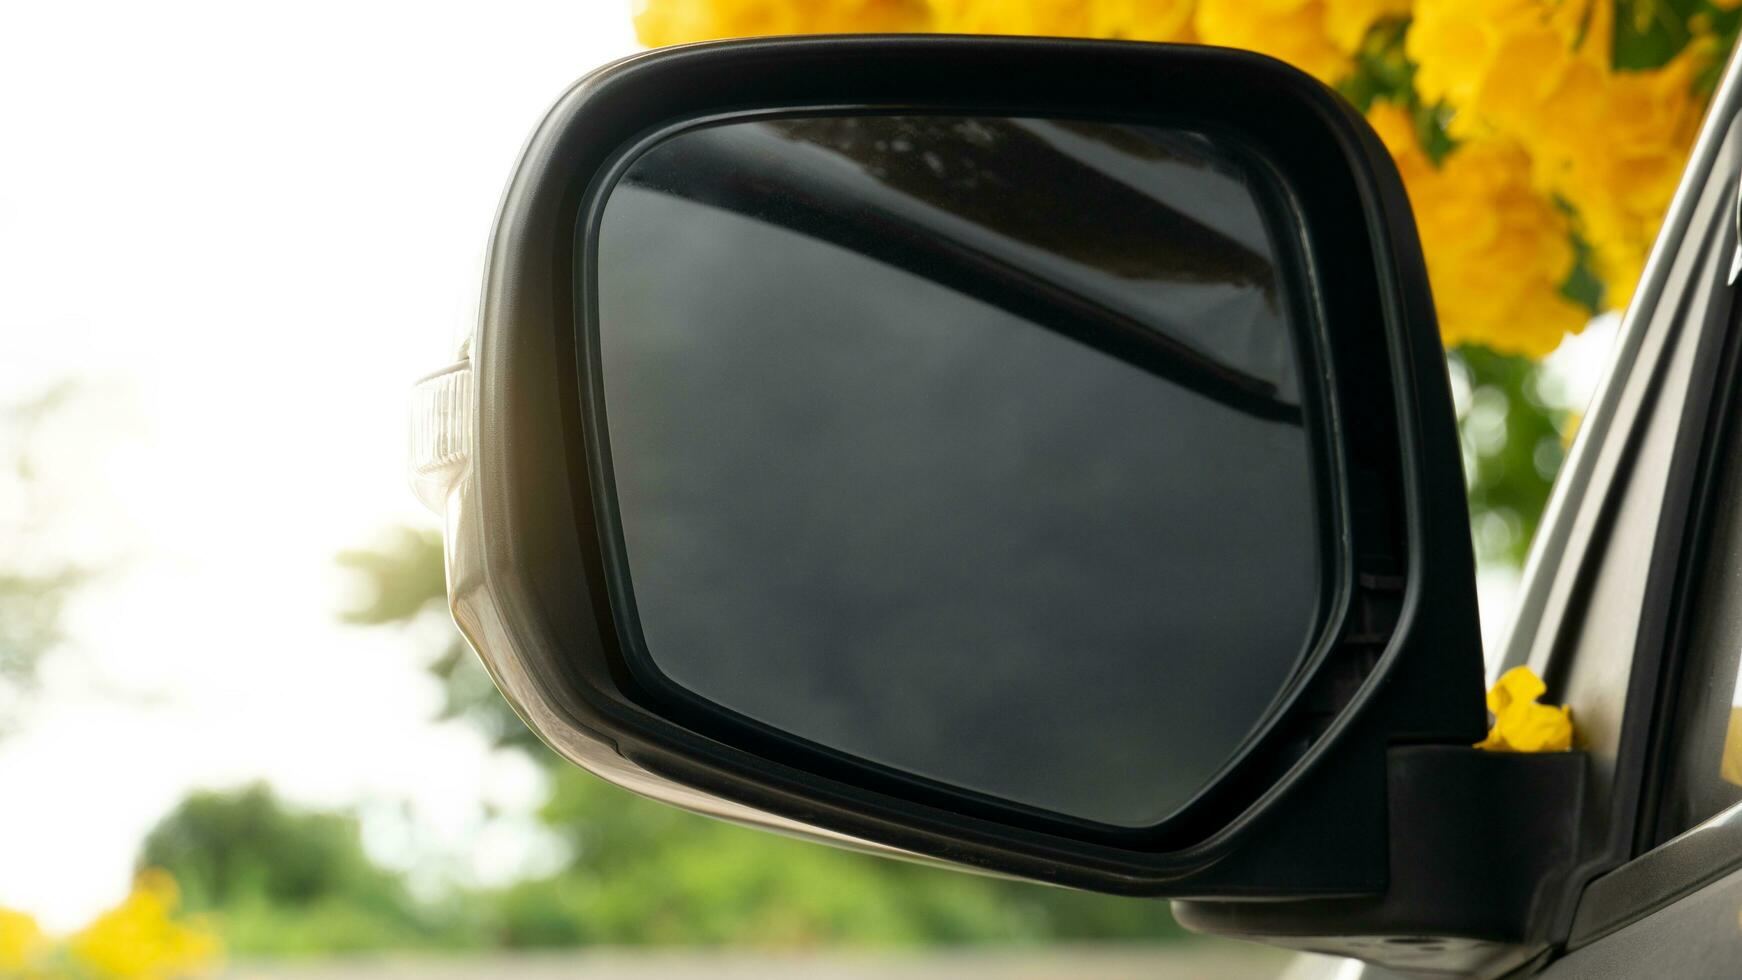 spegel vinge av bil parkering under av gul äldre i de bris med solljus. foto